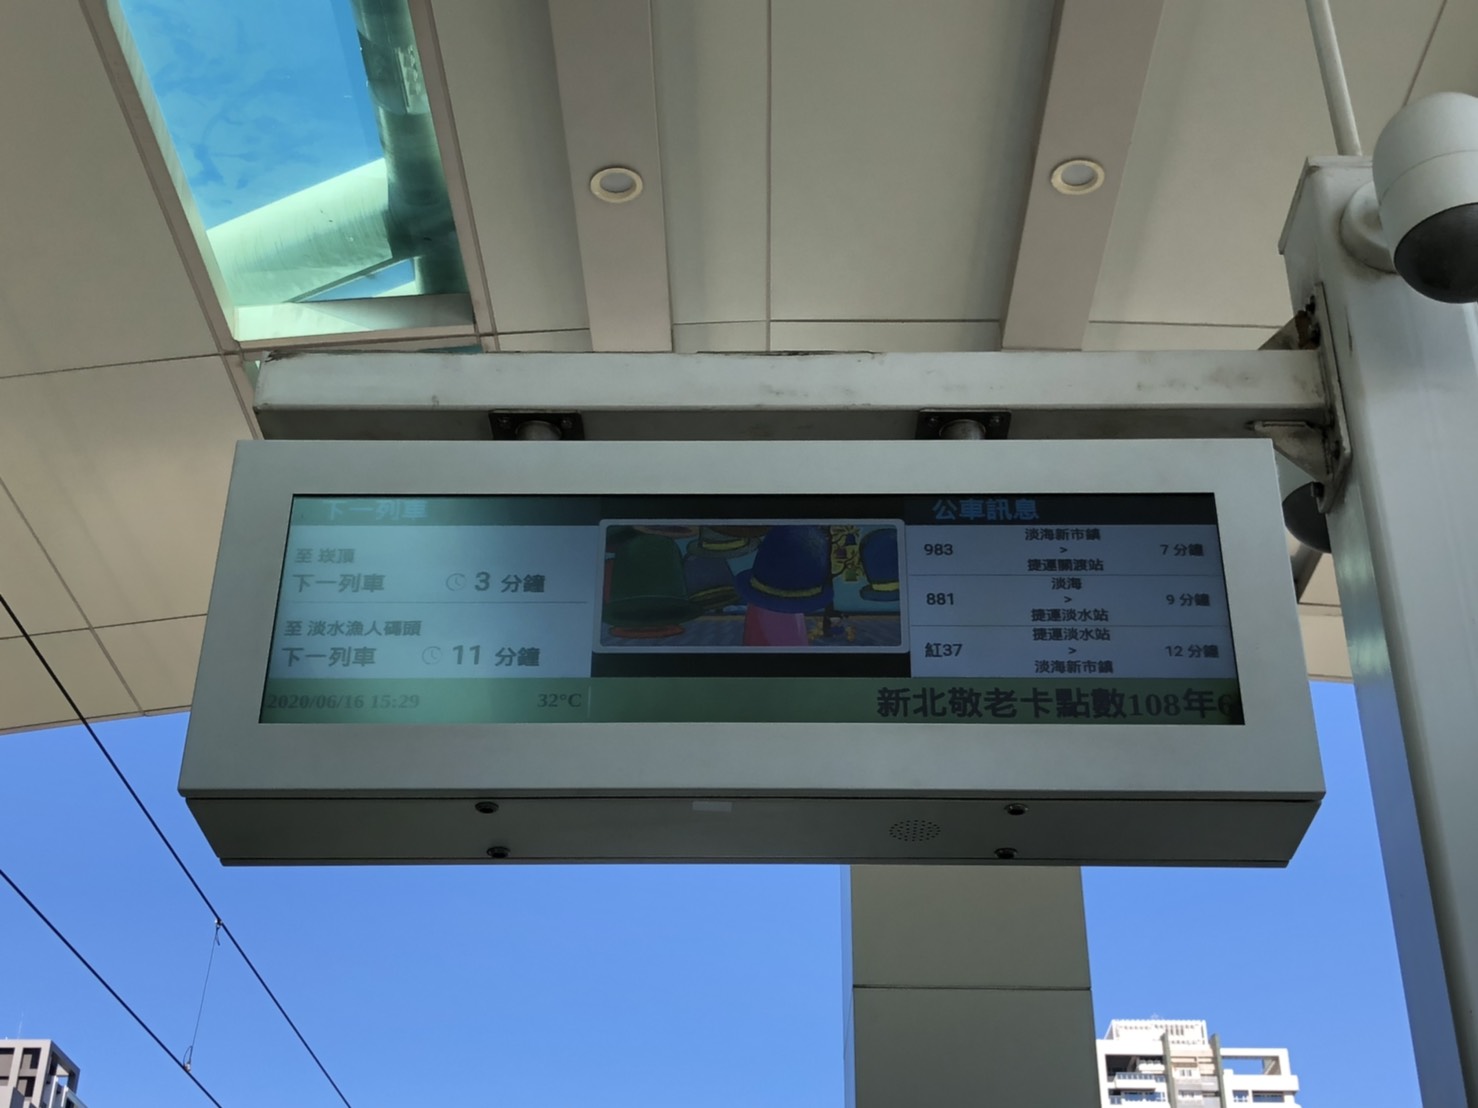 淡海輕軌月台旅客資訊螢幕看板